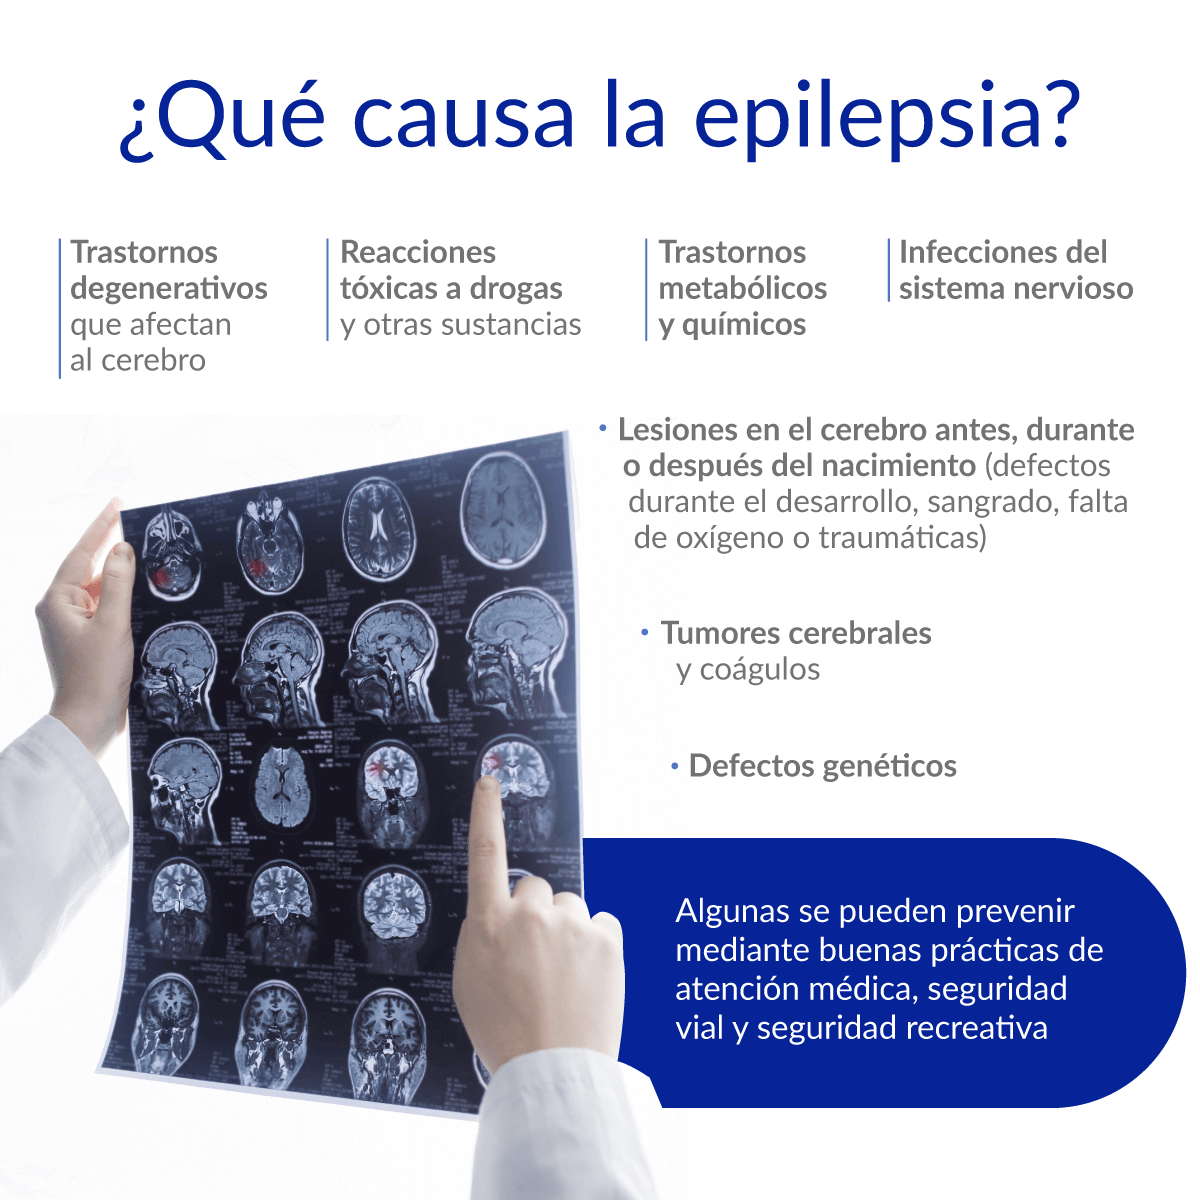 ¿Qué causa epilepsia?